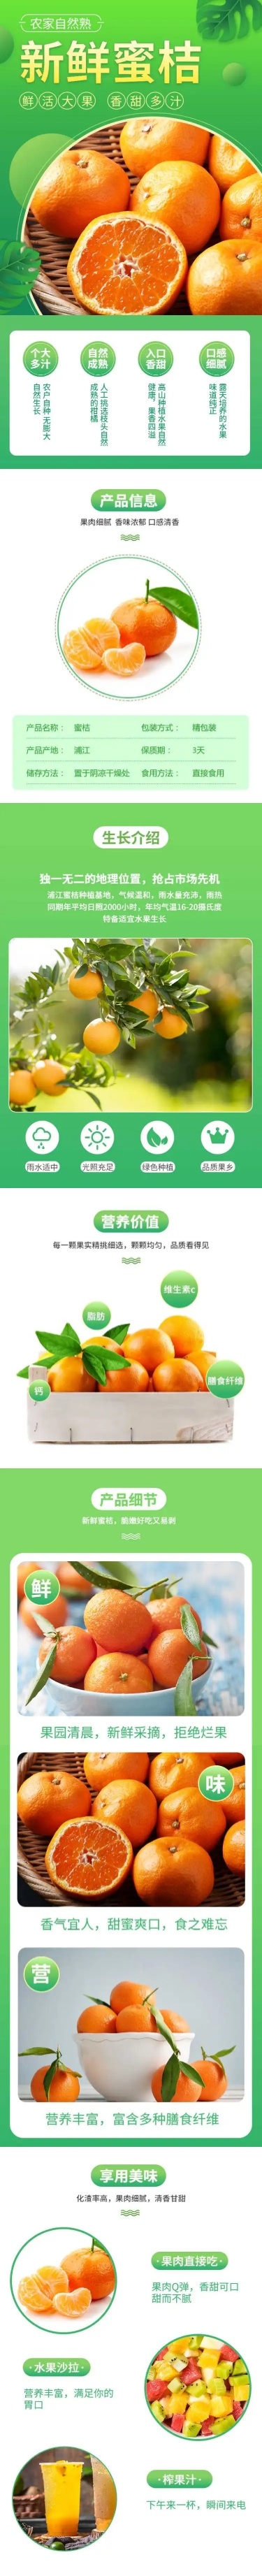 食品生鲜水果橙桔子详情页